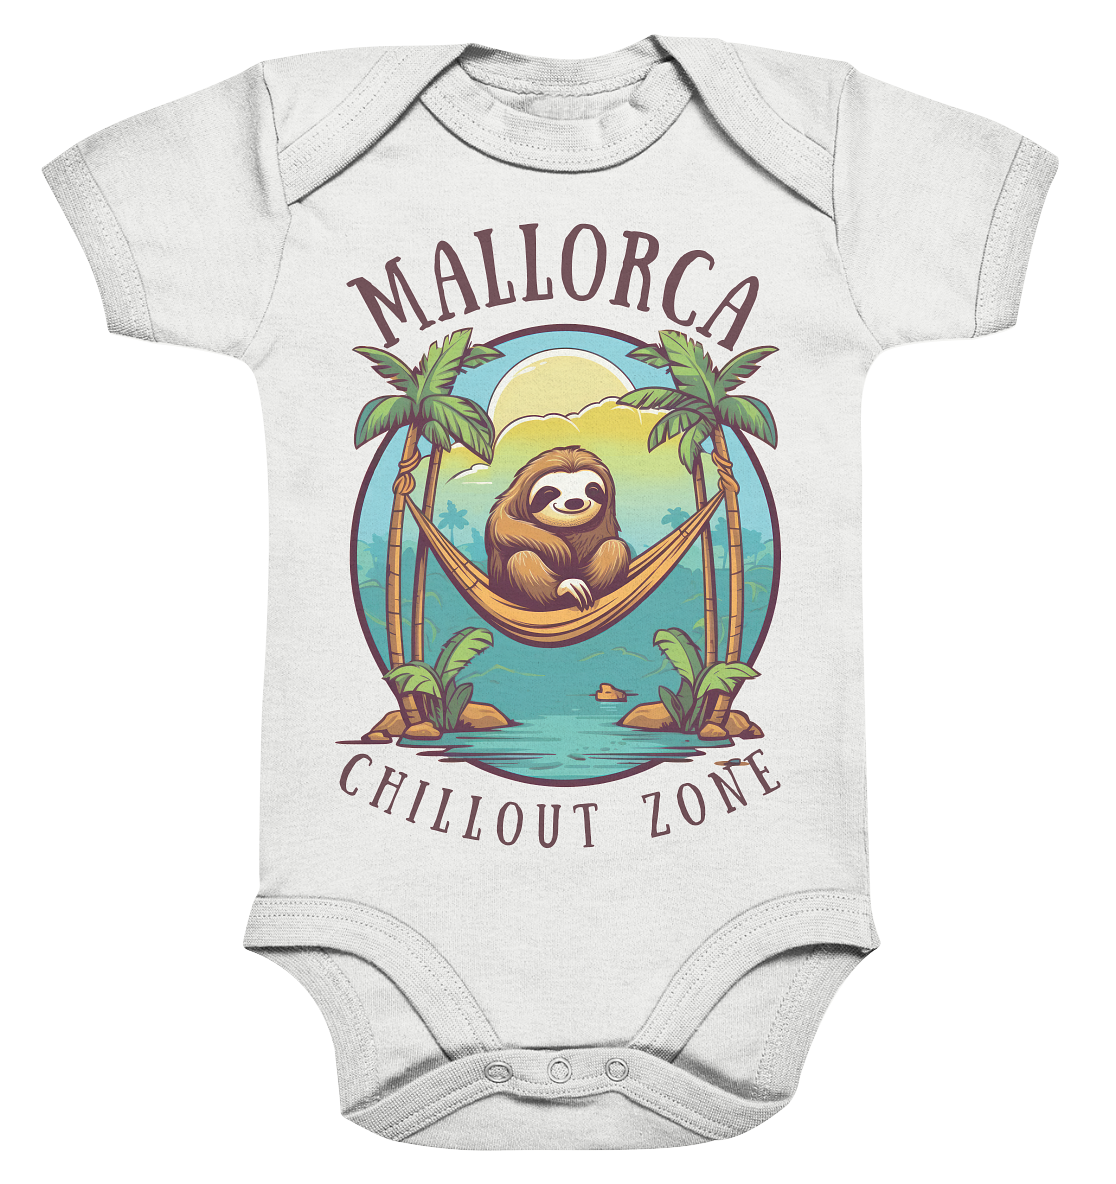 Mallorca Chillout Zone • Baby Bodysuite